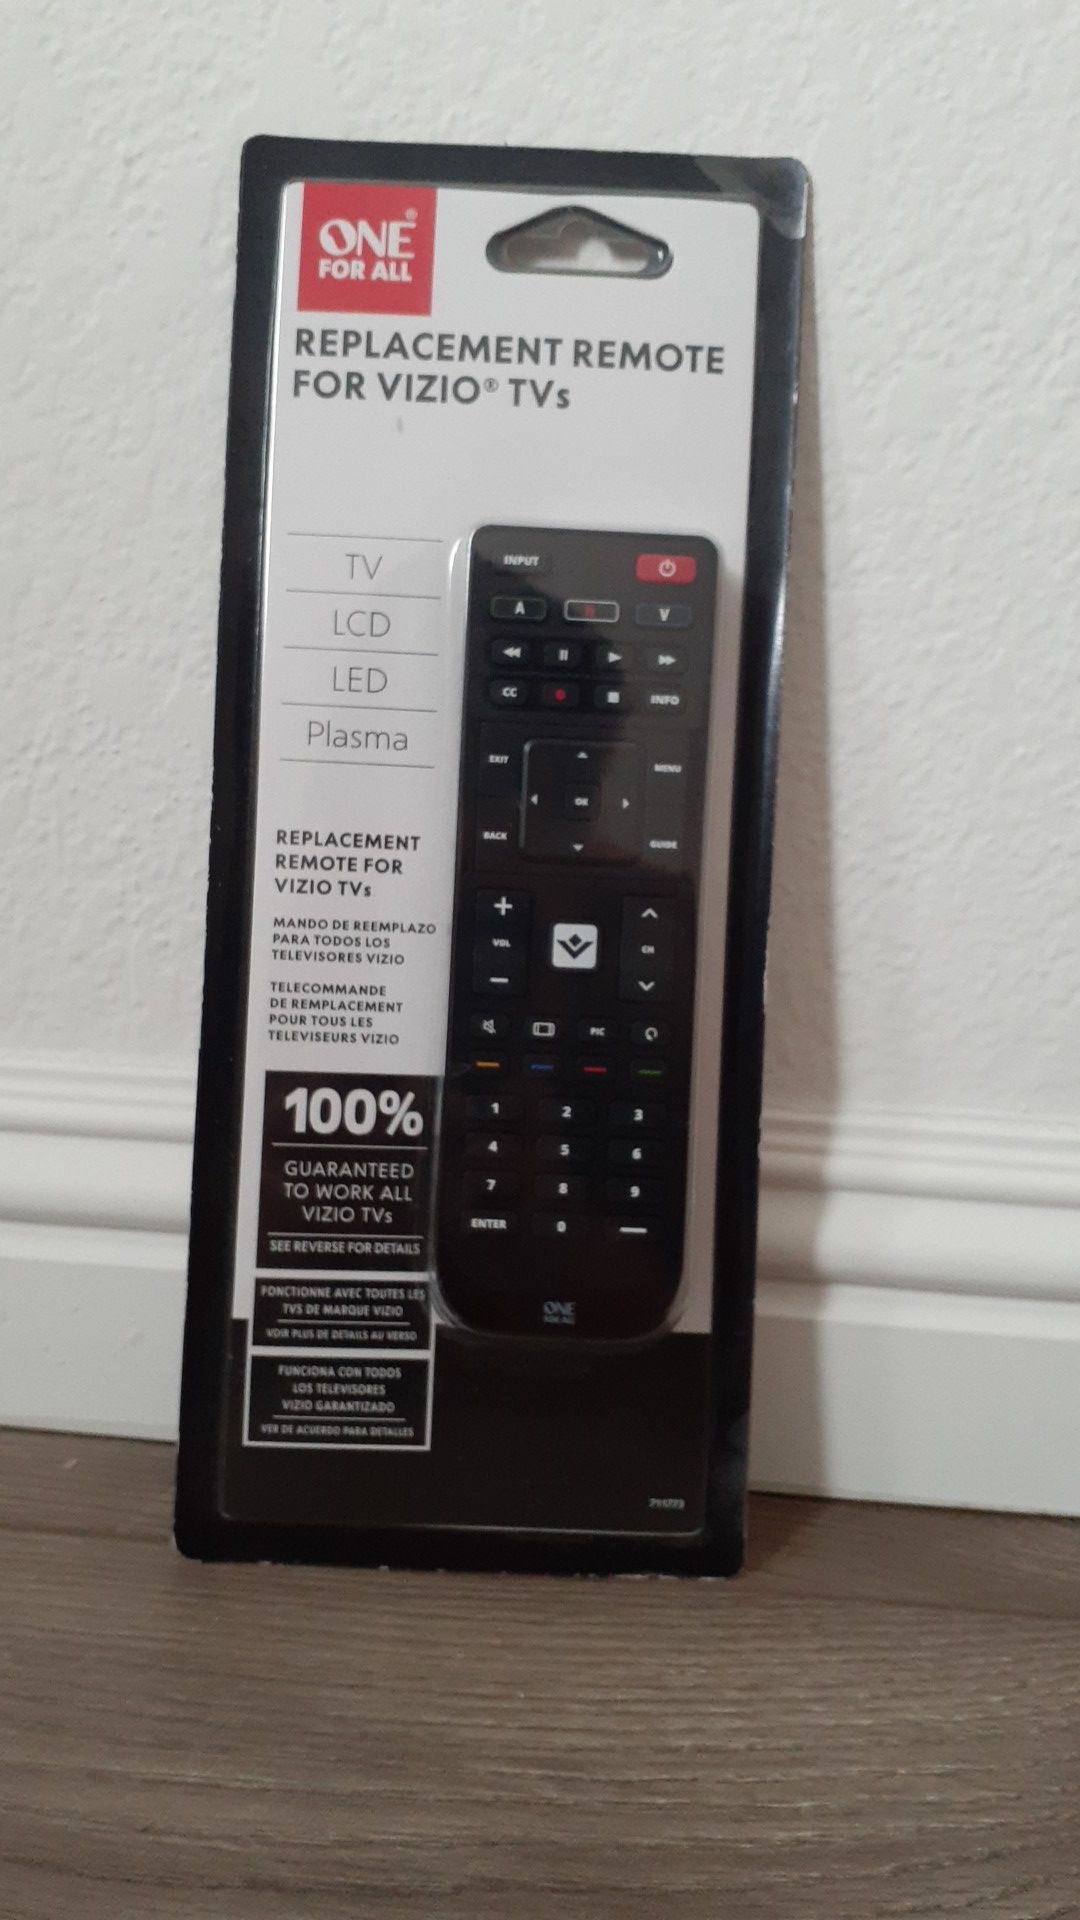 Vizio replacement remote control